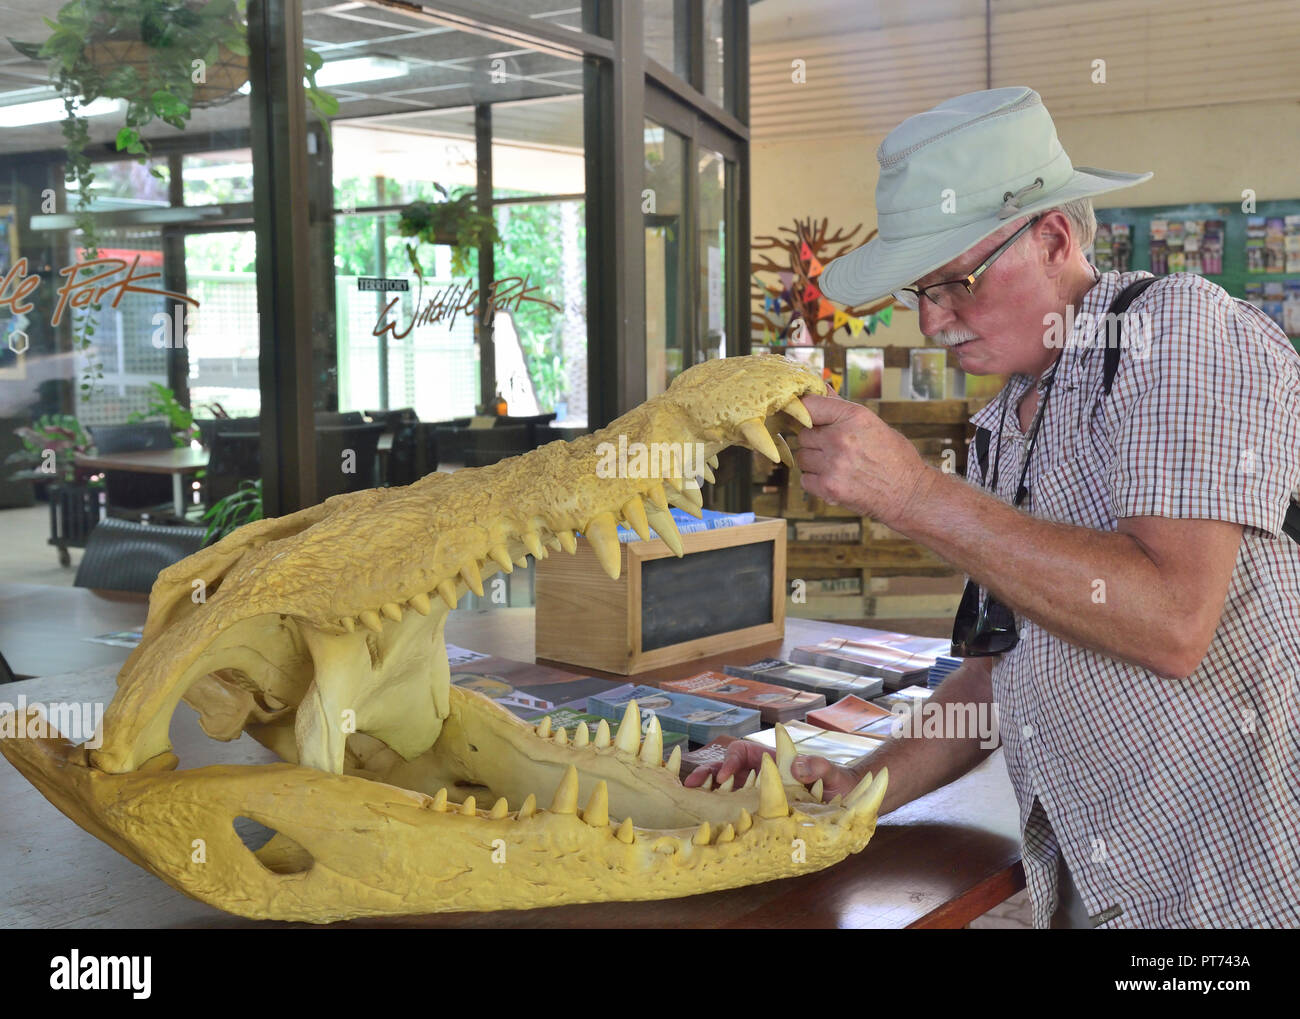 Ouverture touristique crâne de crocodile sur le territoire du parc, la faune de la péninsule Cox Rd, Berry Springs NT 0838 Darwin, Australie Banque D'Images